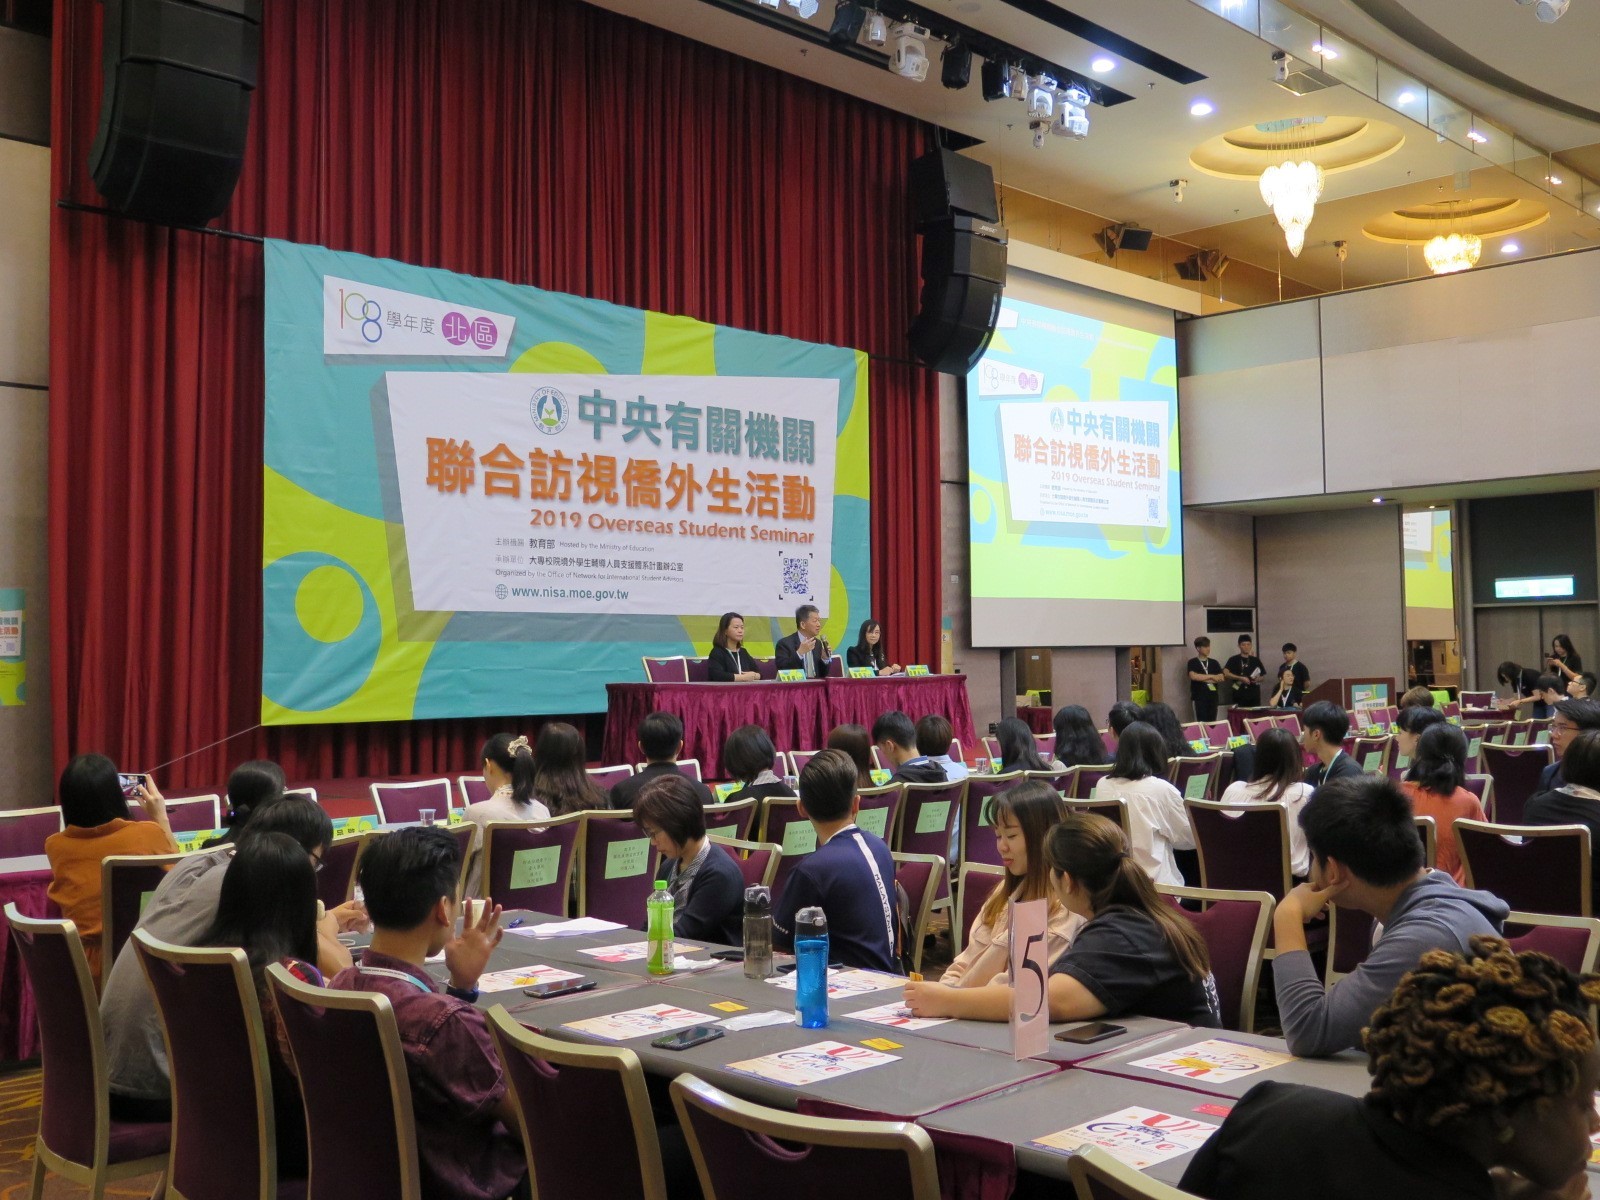 กระทรวงศึกษาธิการไต้หวันจัดการประชุมนักศึกษาต่างชาติและจีนโพ้นทะเล 4 รอบ ทั่วไต้หวัน (ภาพจาก กระทรวงศึกษาธิการ)